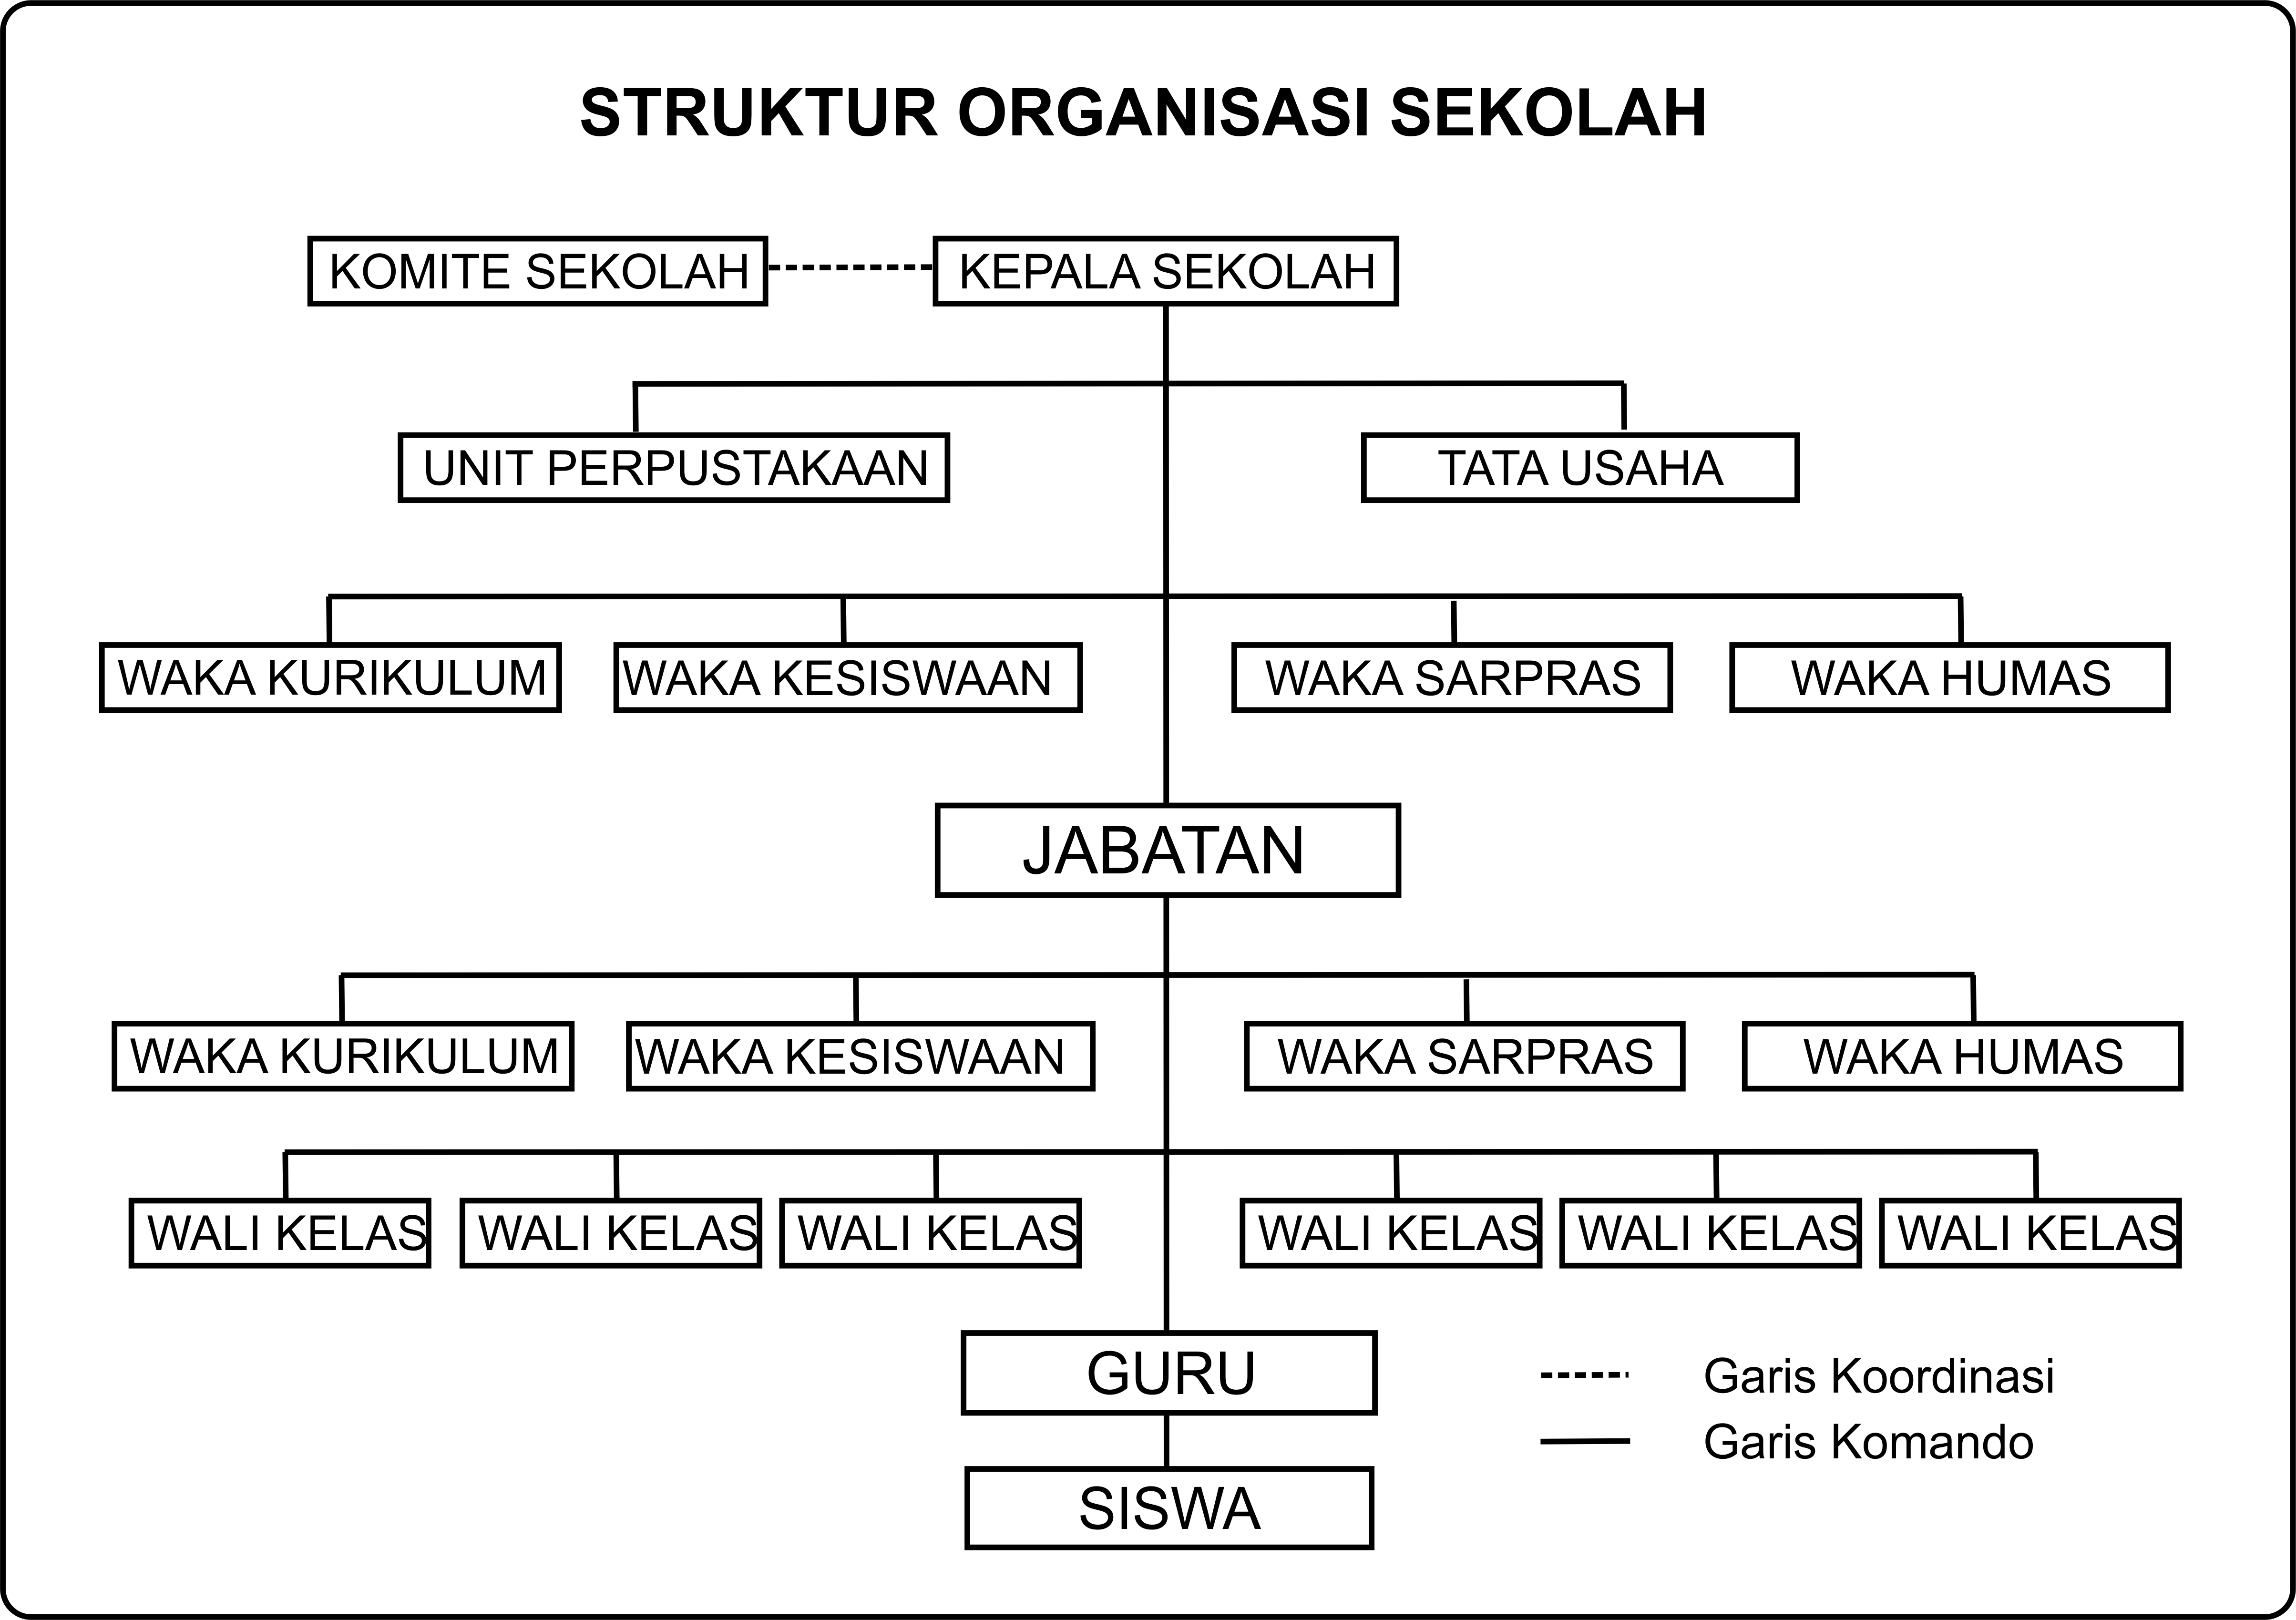 Contoh Struktur Organisasi Sekolah Sma Negeri Di Balikpapan Imagesee